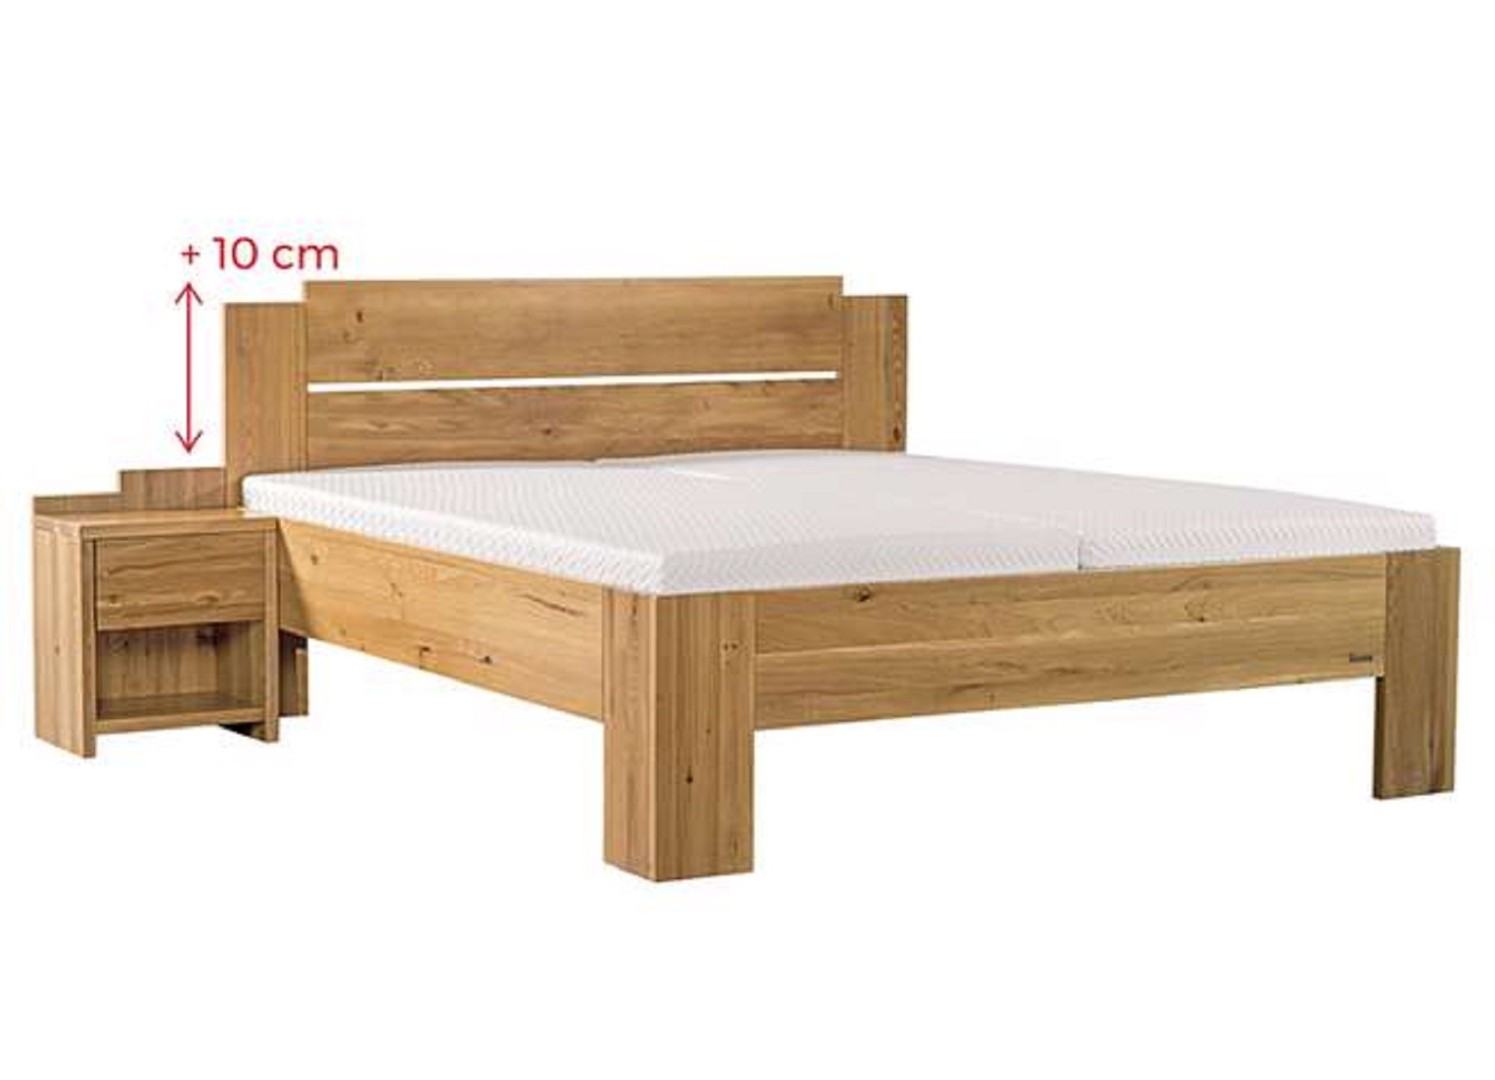 Ahorn GRADO MAX - masivní dubová postel se zvýšeným čelem 90 x 200 cm, dub masiv